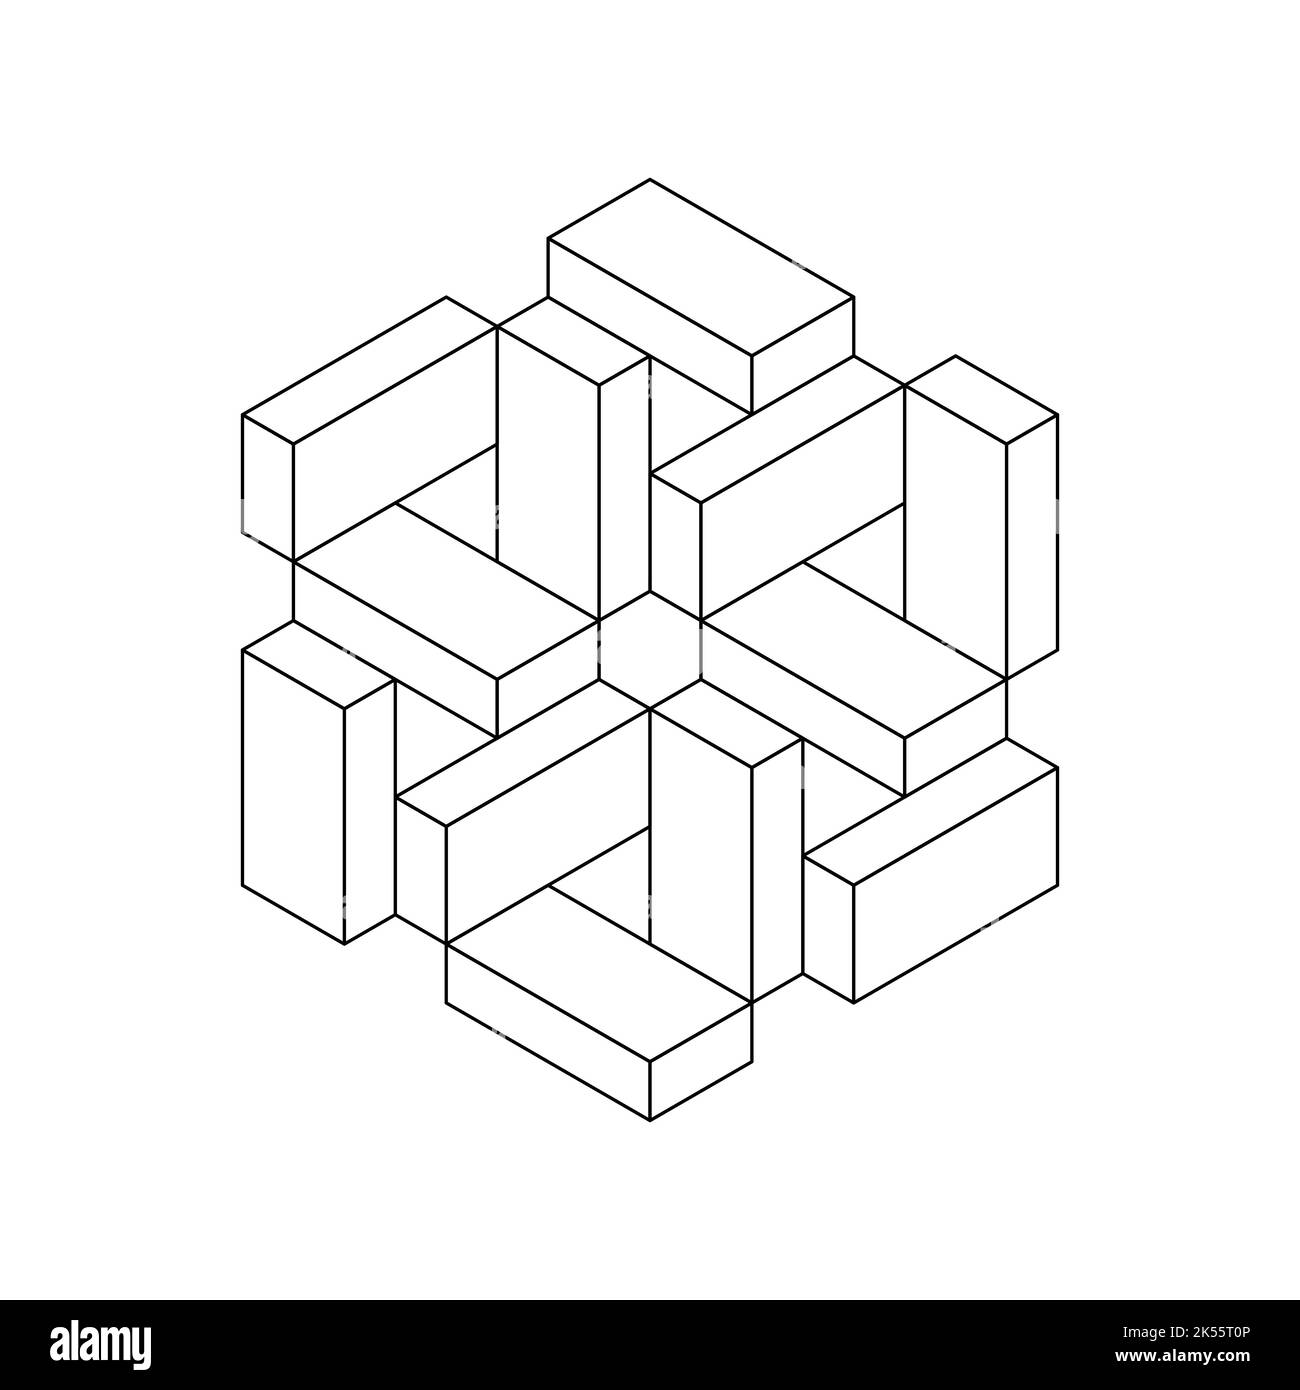 Komplexes geometrisches Objekt aus Rechtecken. Symbol für hexagonale Formlinie nicht möglich. Ziegel oder Blöcke einzigartige isometrische Projektion. Penrose Esher Figur. Stock Vektor